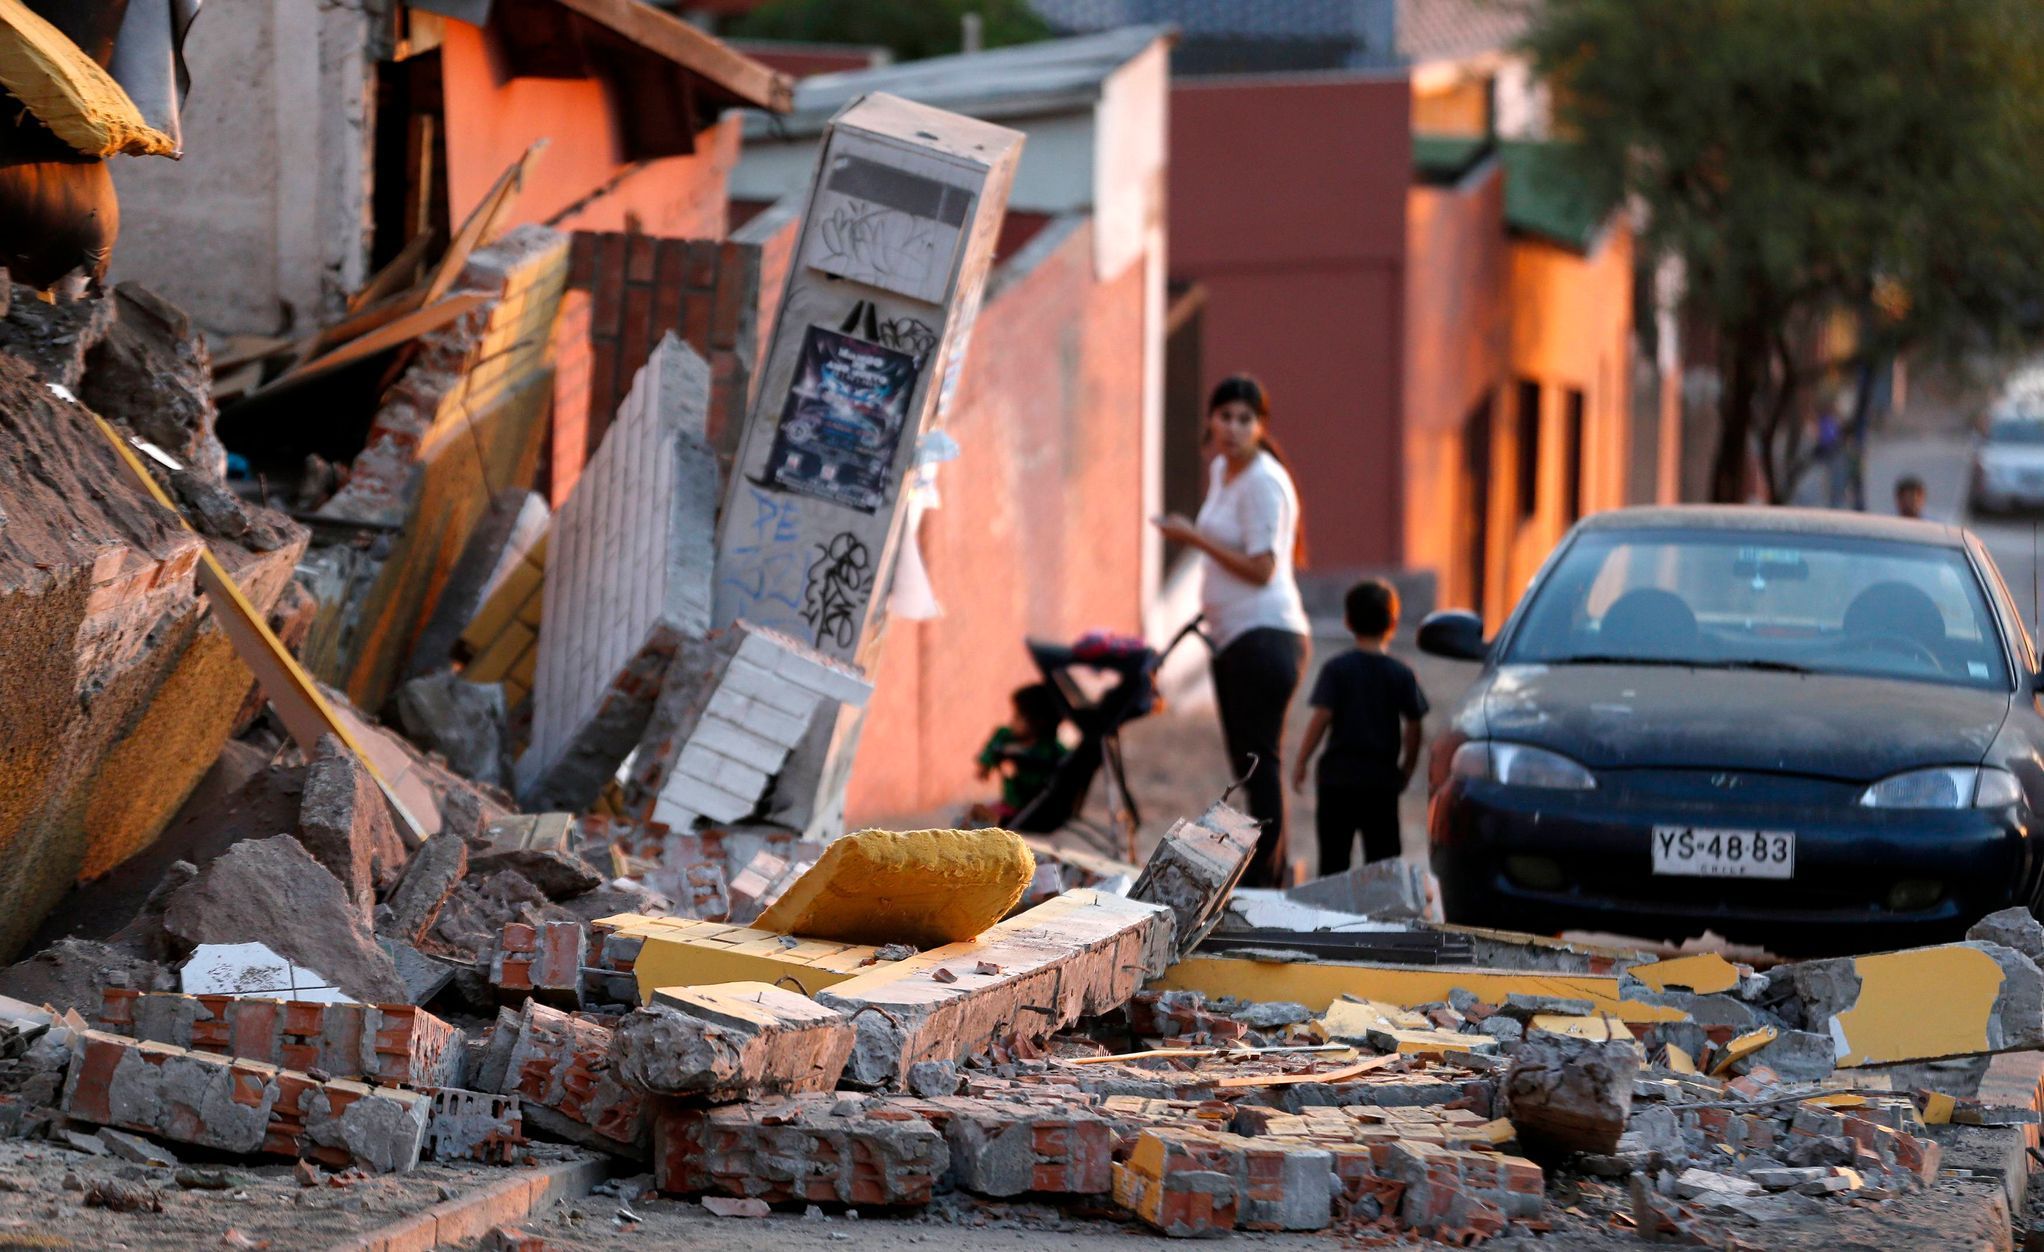 Iquique - Chile - zemětřesení - 2. dubna 2014